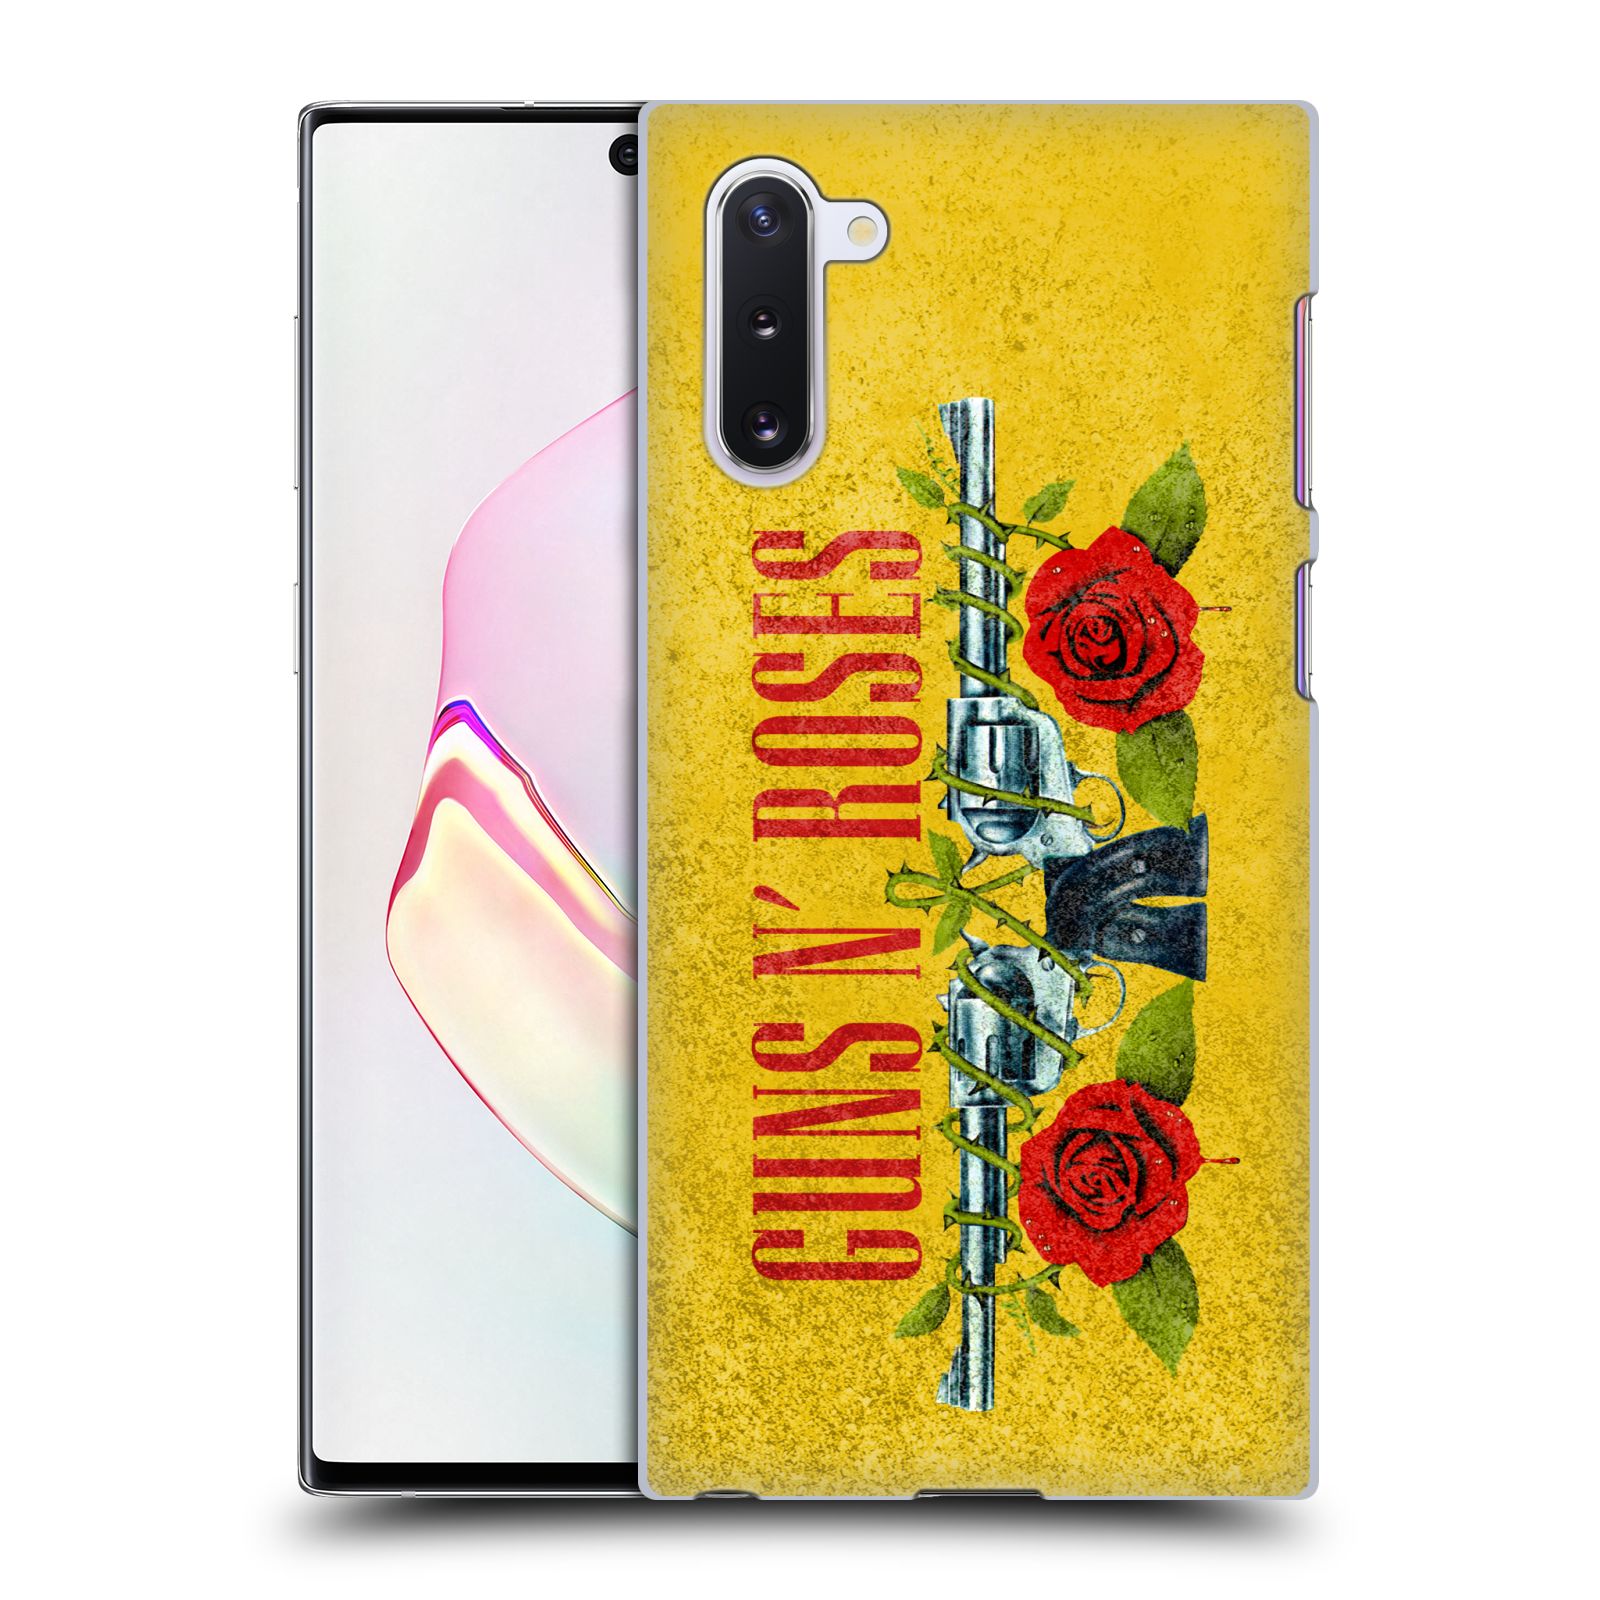 Pouzdro na mobil Samsung Galaxy Note 10 - HEAD CASE - hudební skupina Guns N Roses pistole a růže žluté pozadí